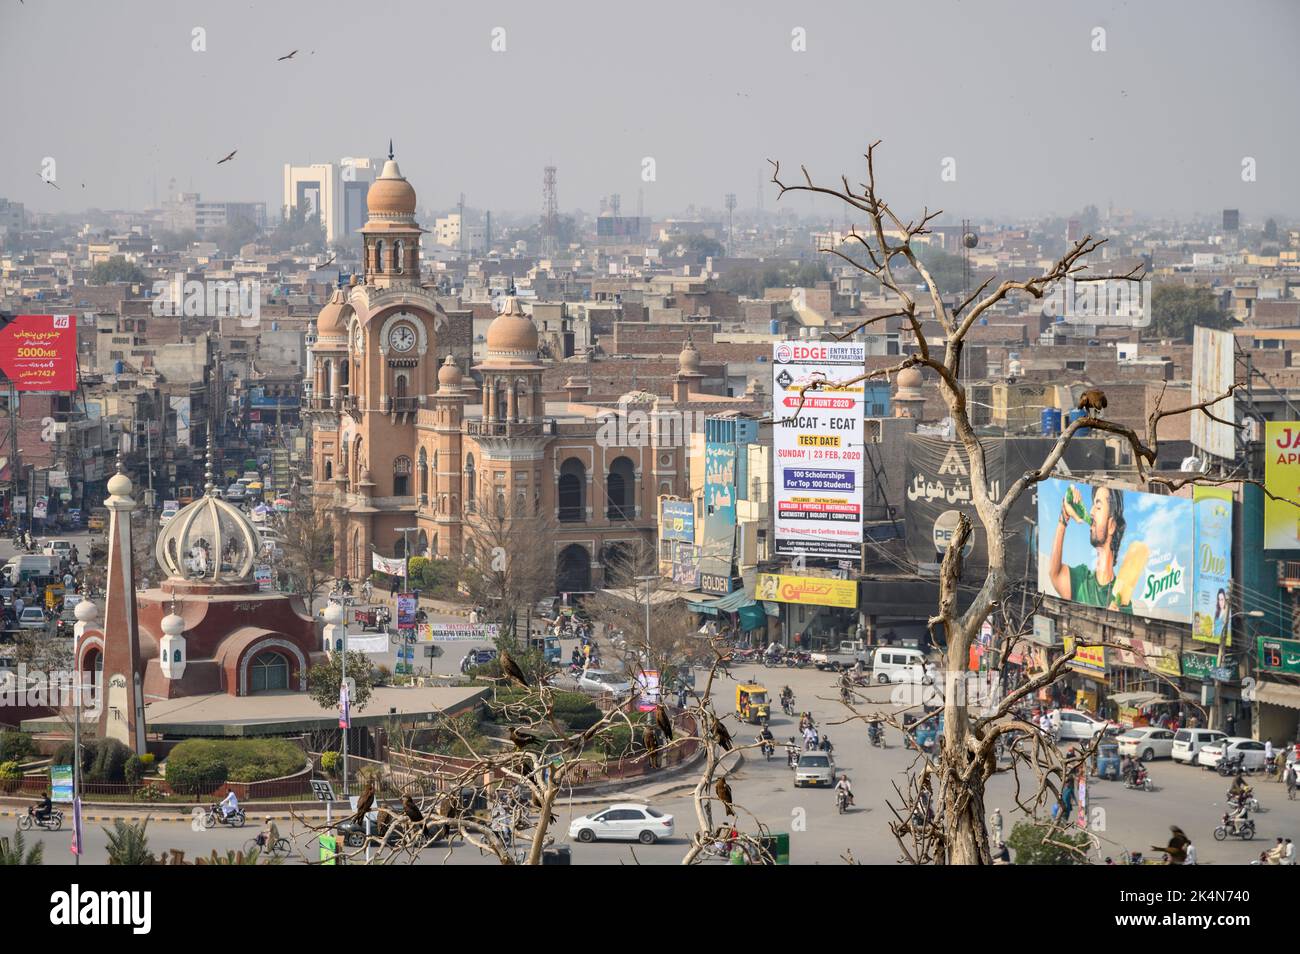 Multan, Pakistán - 22 de febrero de 2020: La torre del reloj y la rotonda principal de la ciudad que alberga una mezquita de diseño contemporáneo. La mezquita tiene vista única Foto de stock